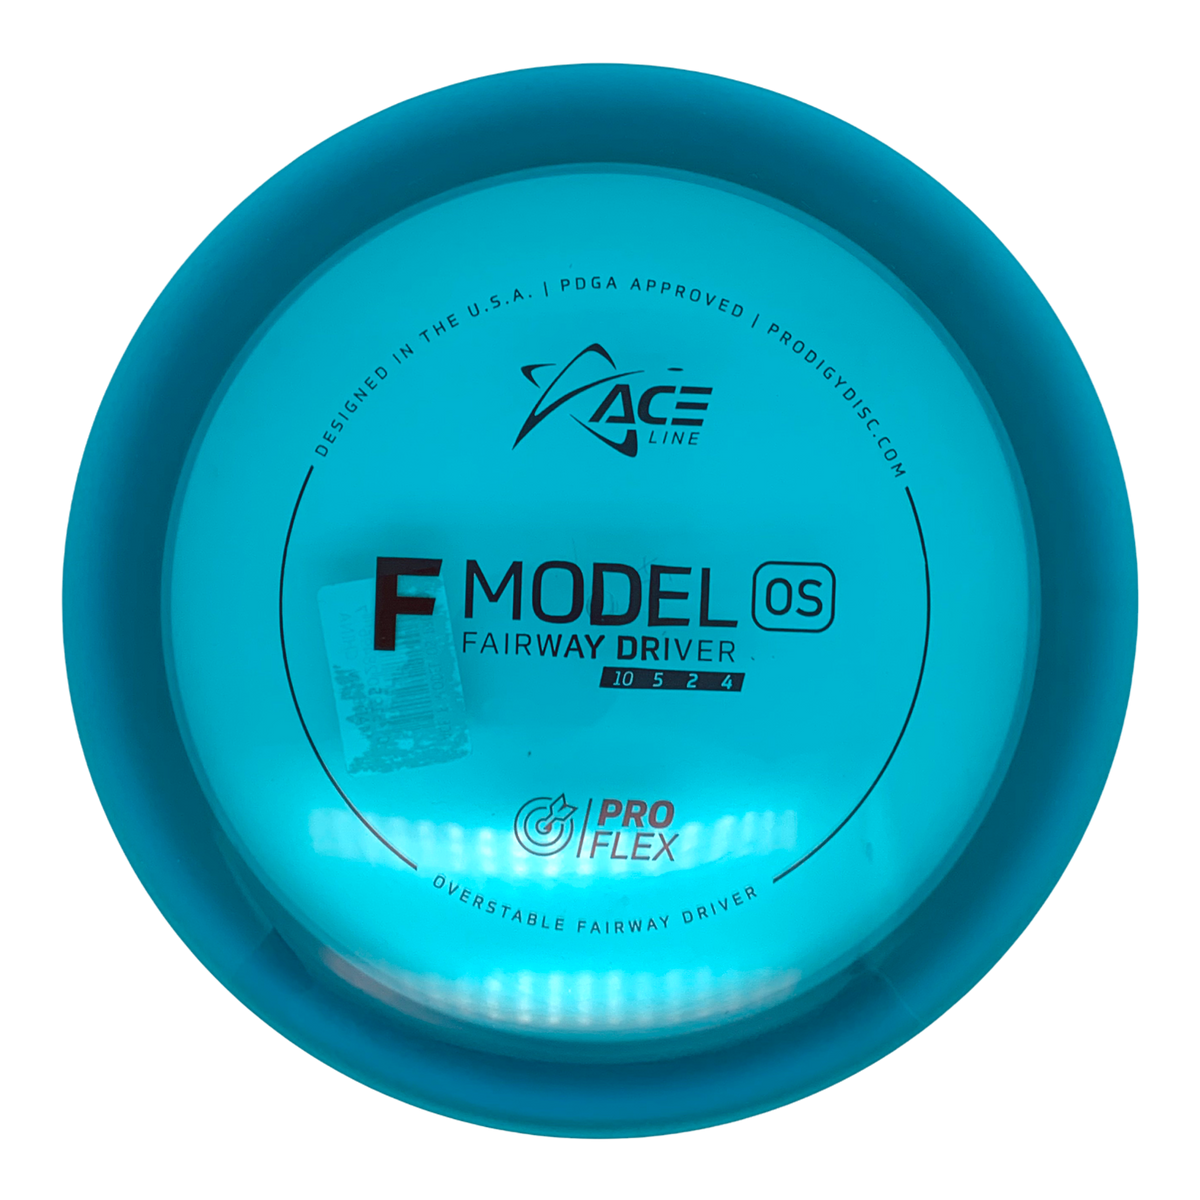 Prodigy Ace Line ProFlex F Model OS